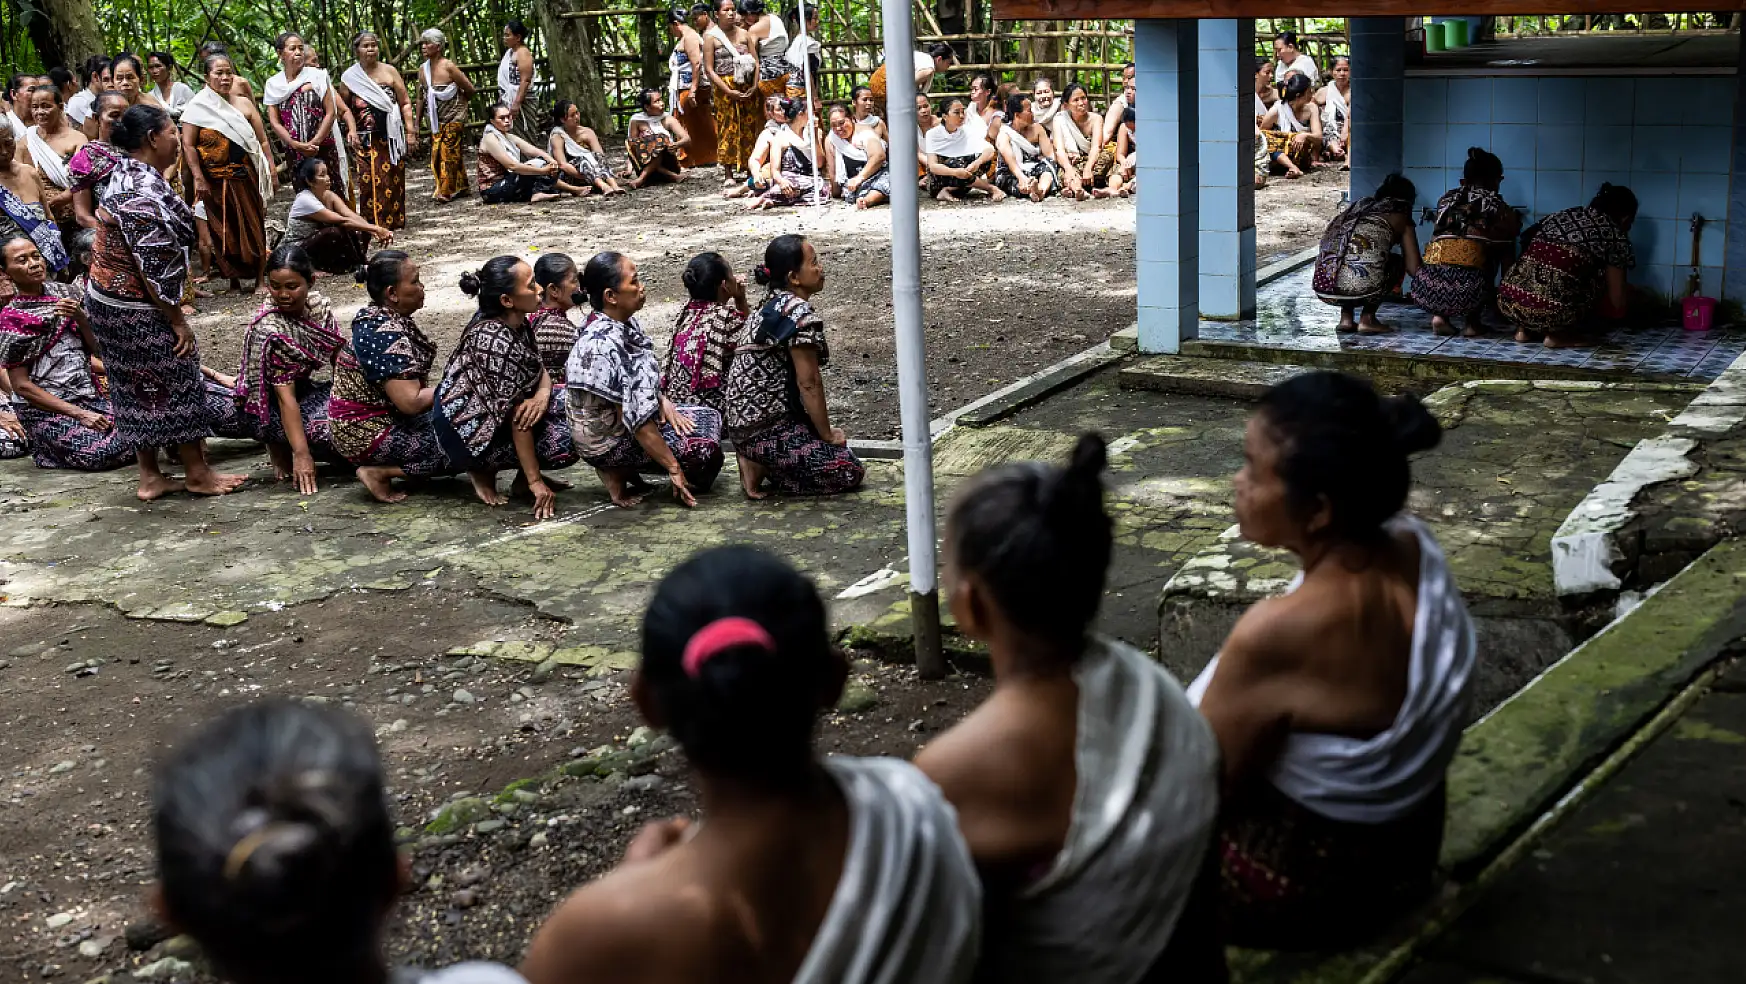 Endonezya'nın Bonokeling yerli topluluğu Ramazan ayını törenle karşıladı